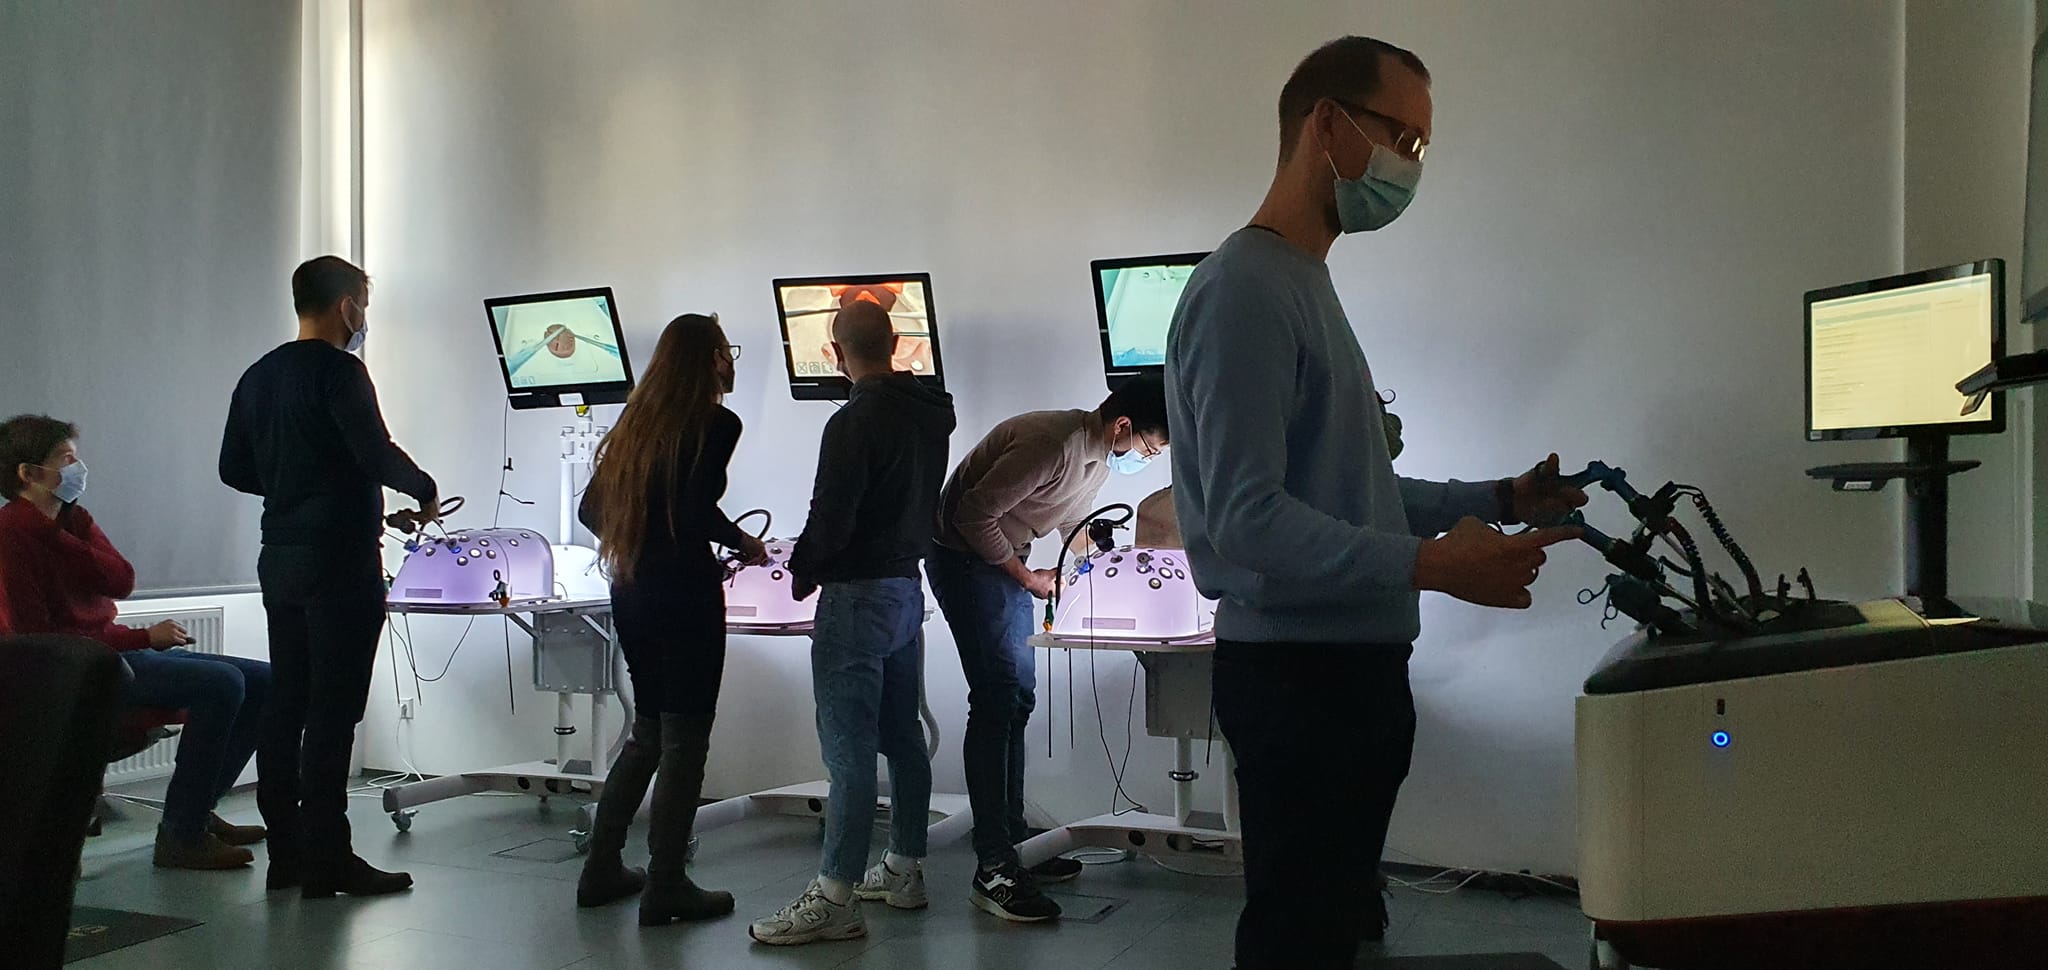 na sali szkoleniowej znajduje się 6 osób odwróconych bokiem oraz tyłem przed symulatorami medycznymi wykonując procedurę chirurgiczną uwidocznioną na ekranach monitorów